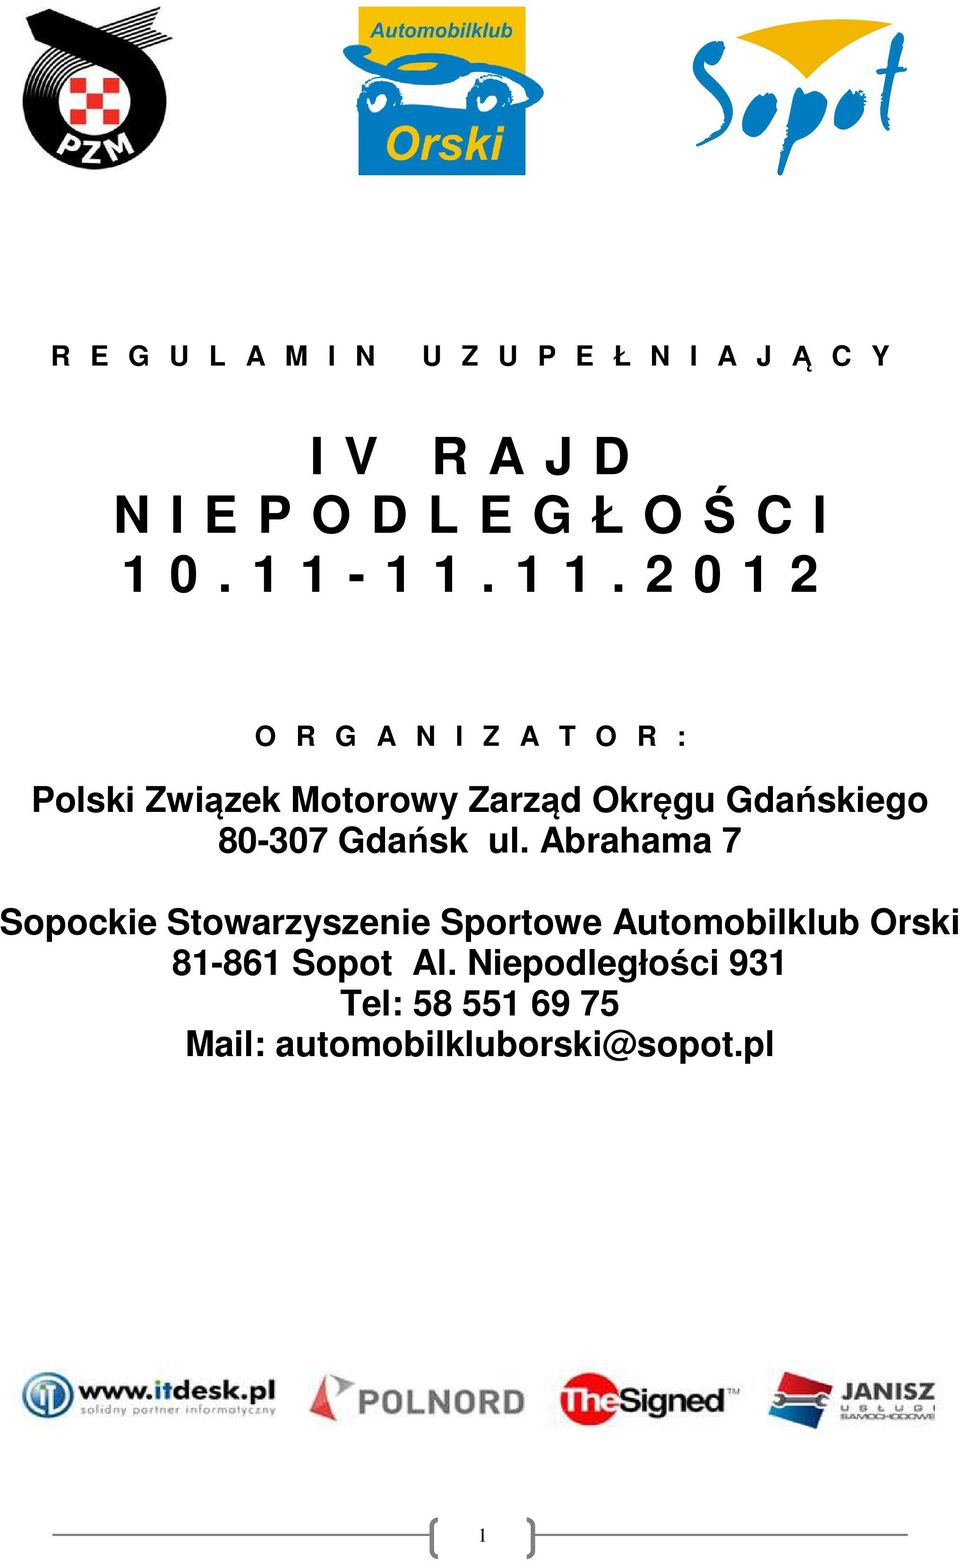 2 0 1 2 O R G A N I Z A T O R : Polski Związek Motorowy Zarząd Okręgu Gdańskiego 80-307